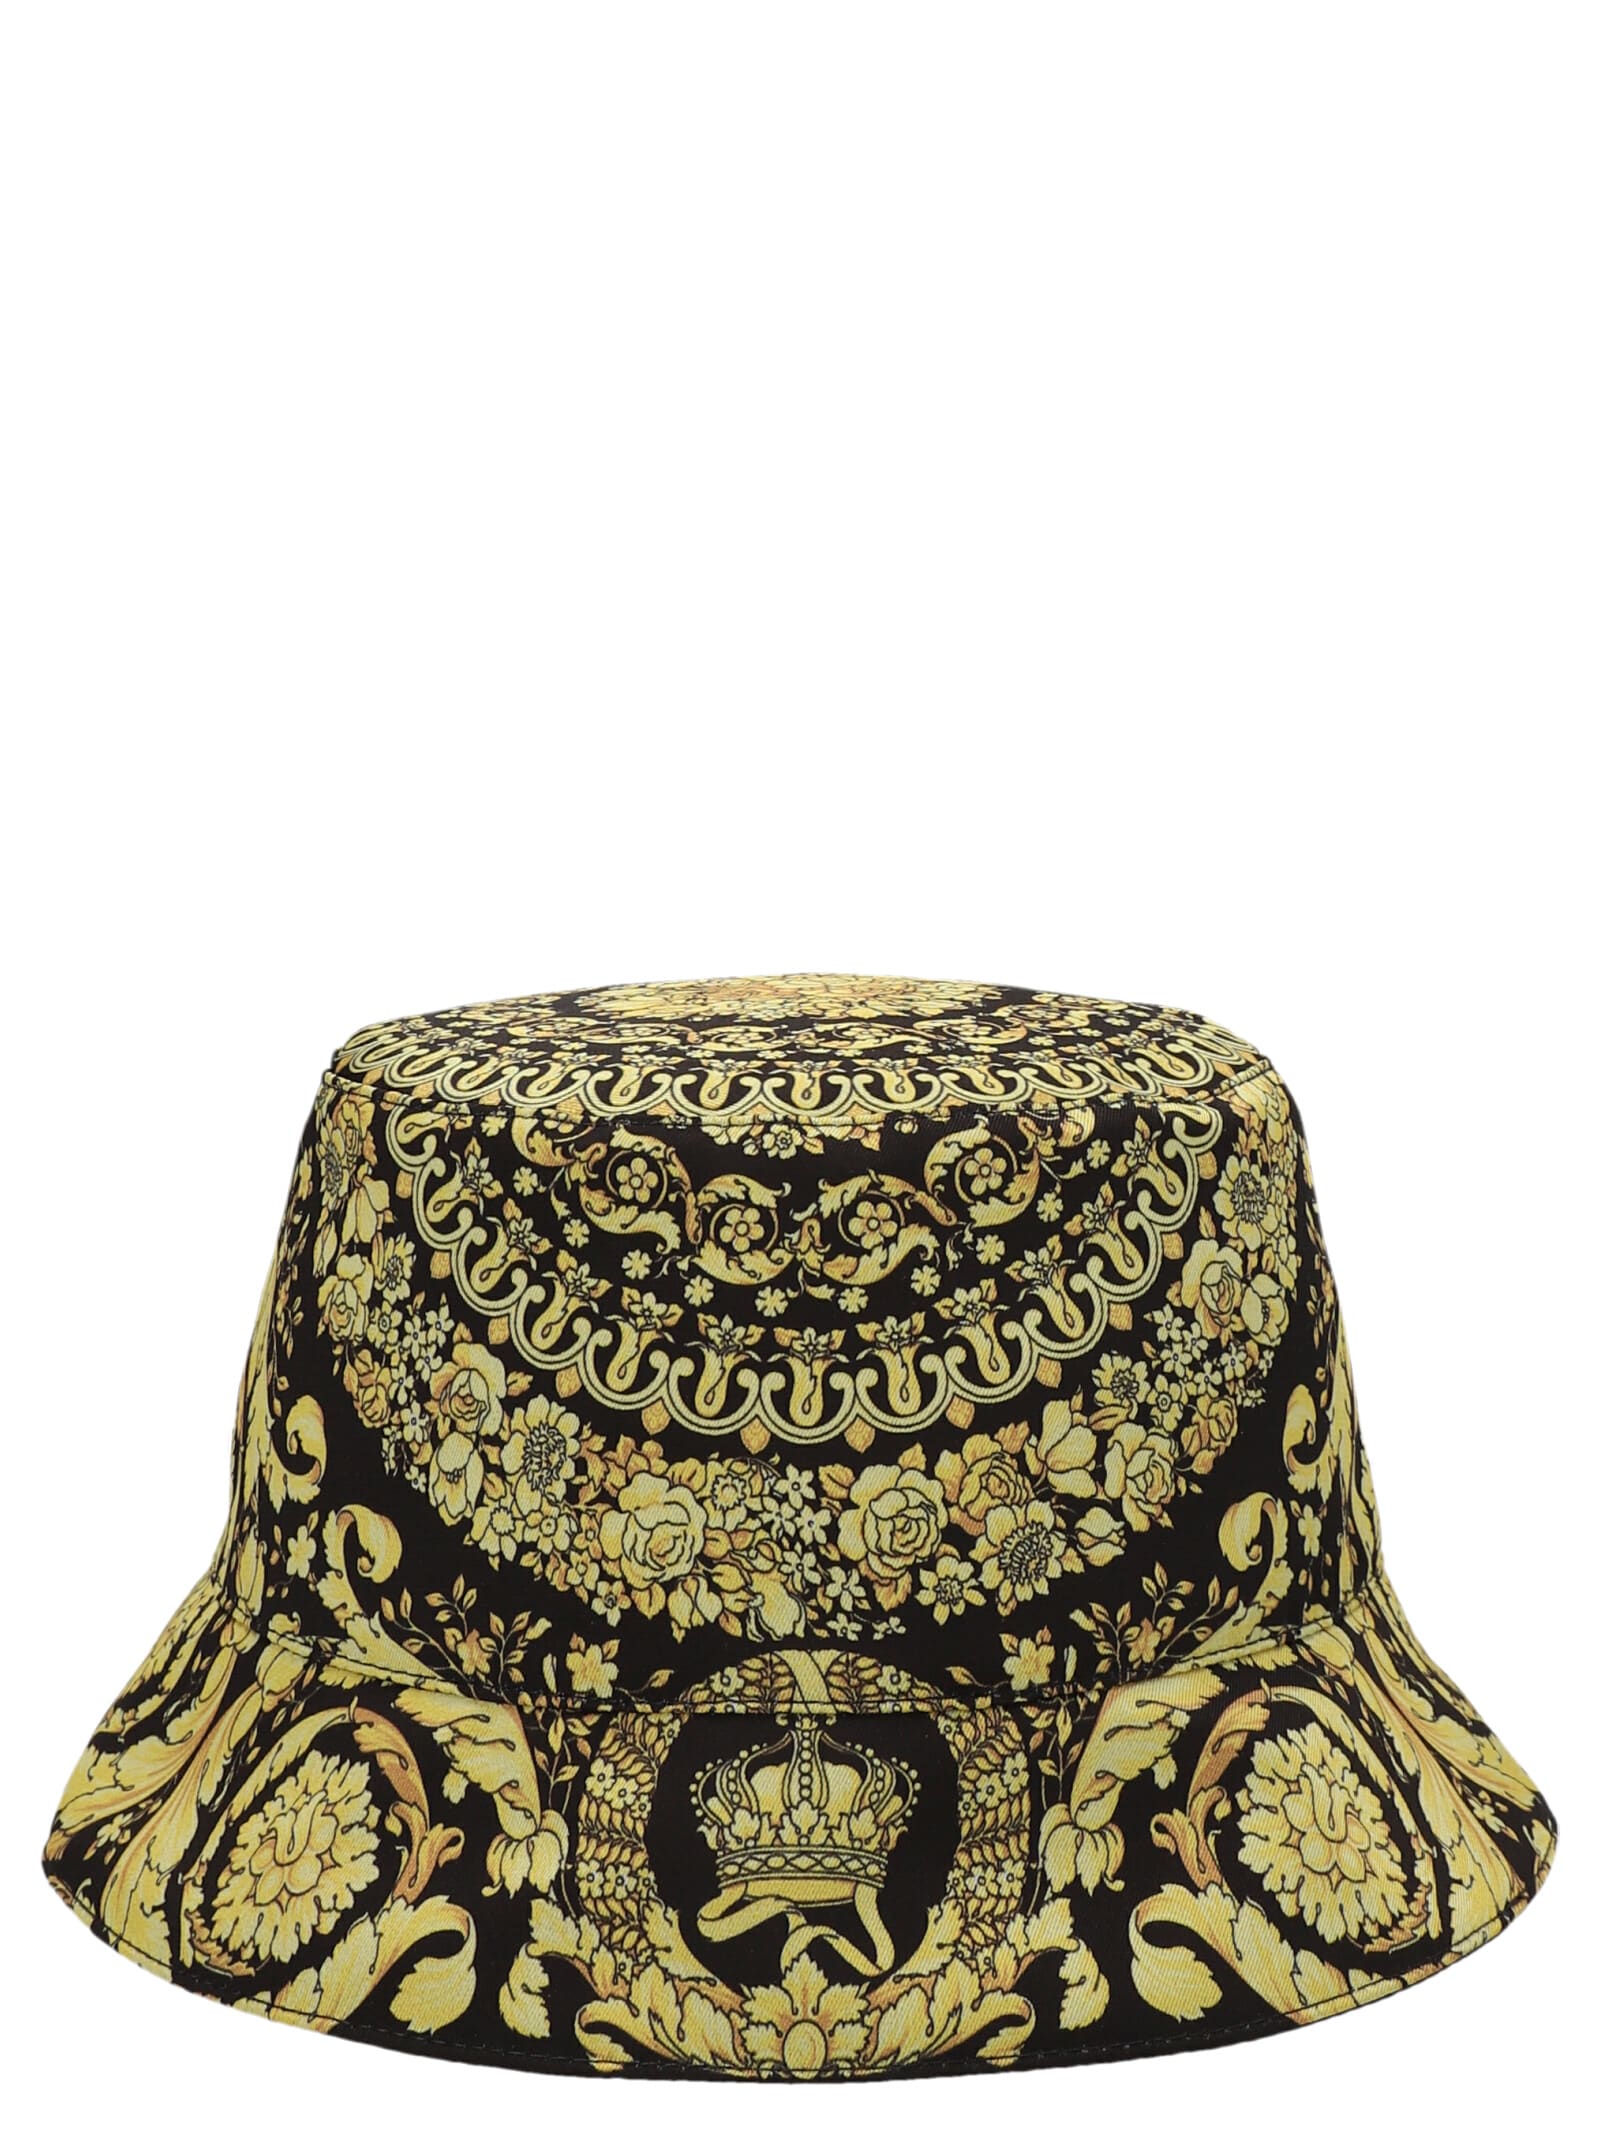 Versace barocco Bucket Hat